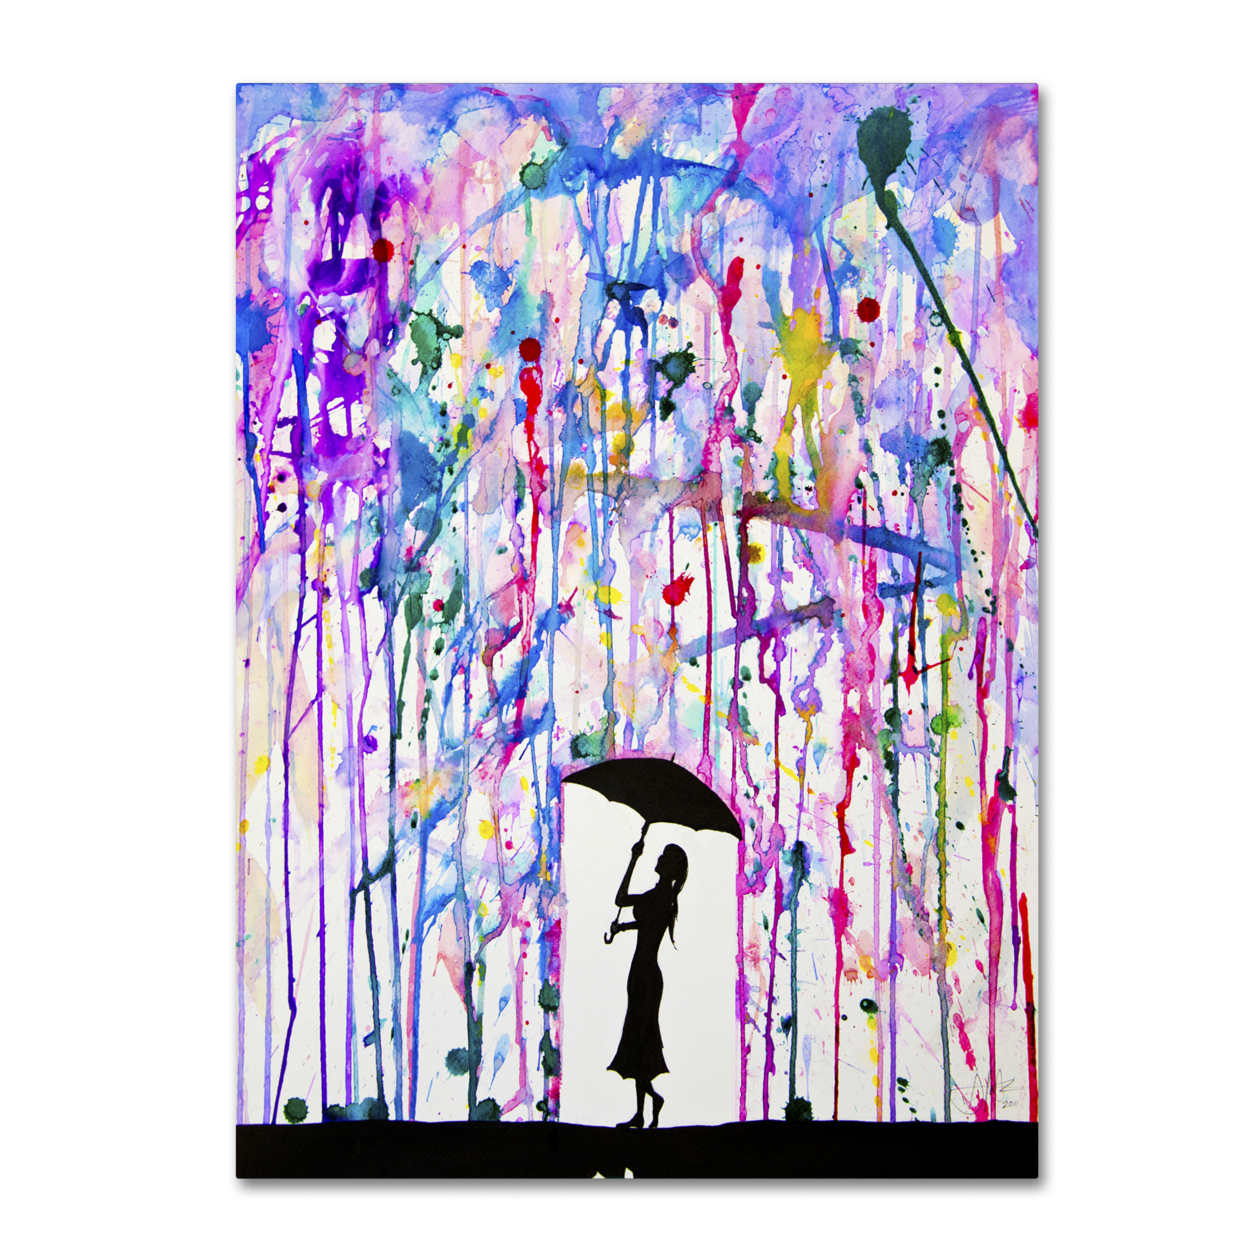 Marc Allante 'Deluge' Canvas Wall Art 35 X 47 Inches